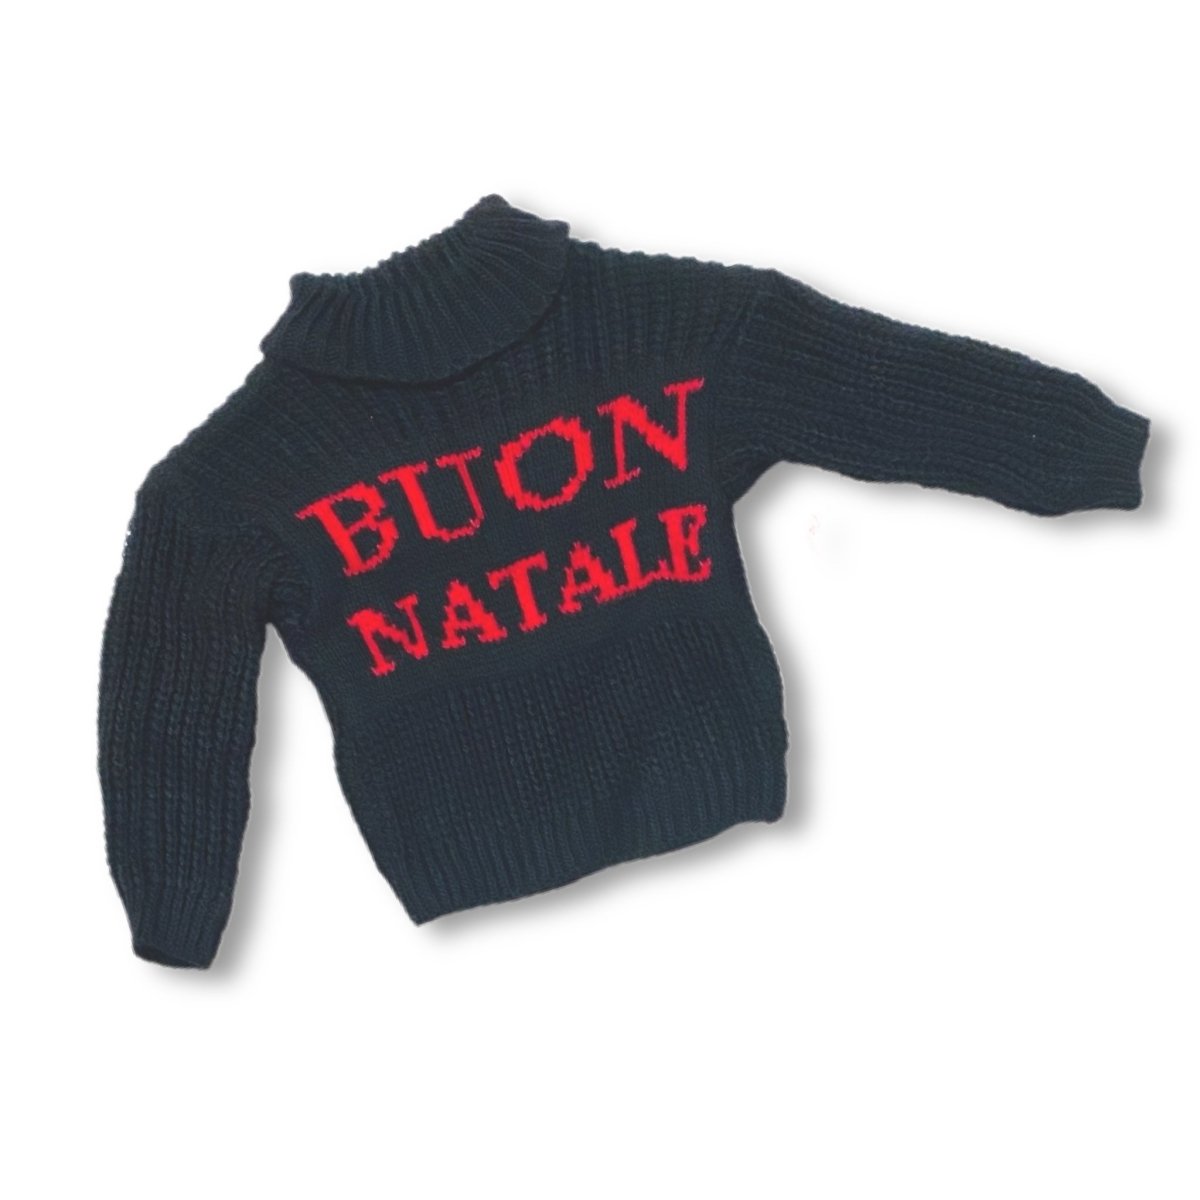 Maglione Natalizio Collo alto - Mstore016 - maglione neonato - Mstore016